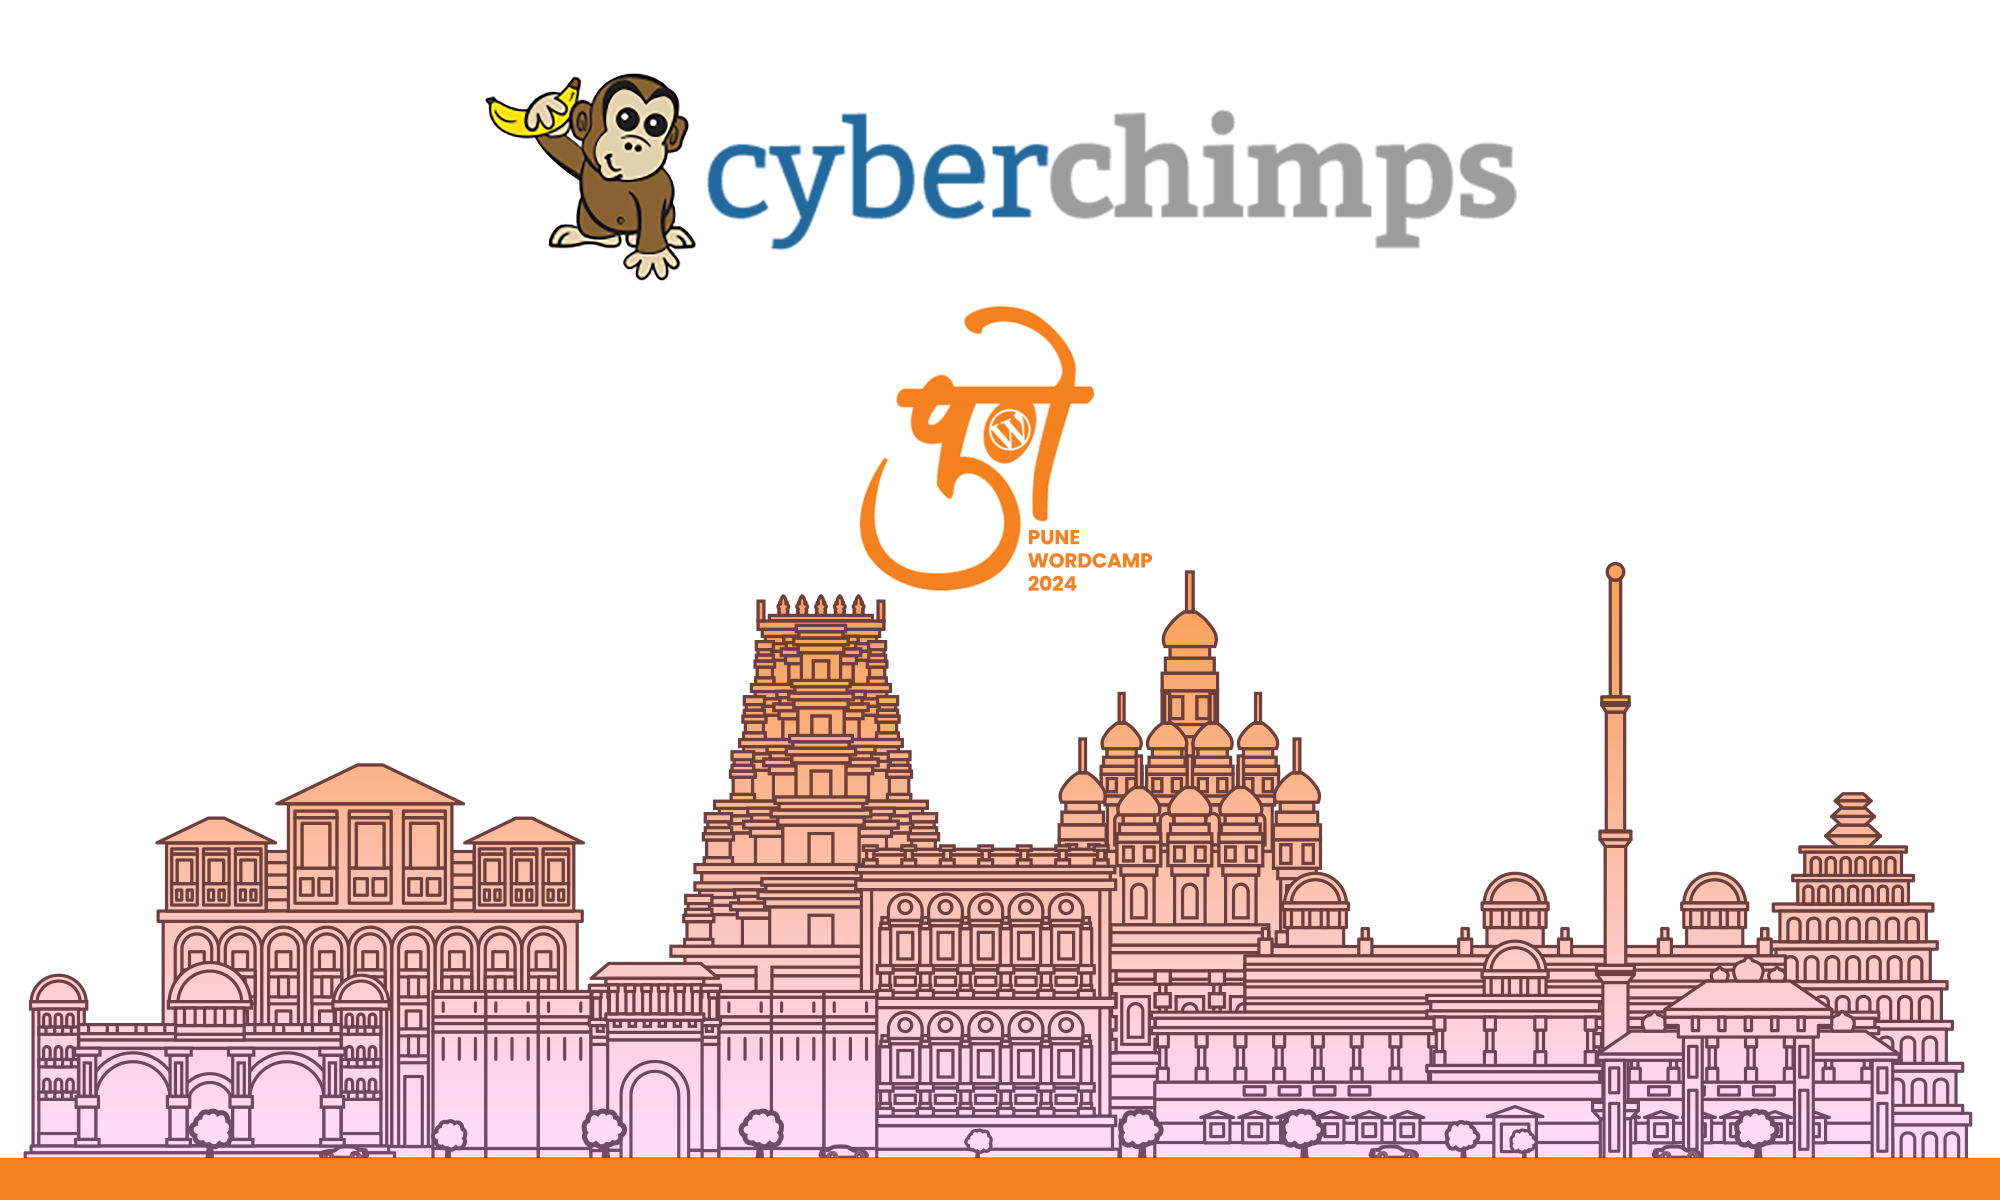 Cyberchimps joins in as a Silver Sponsor